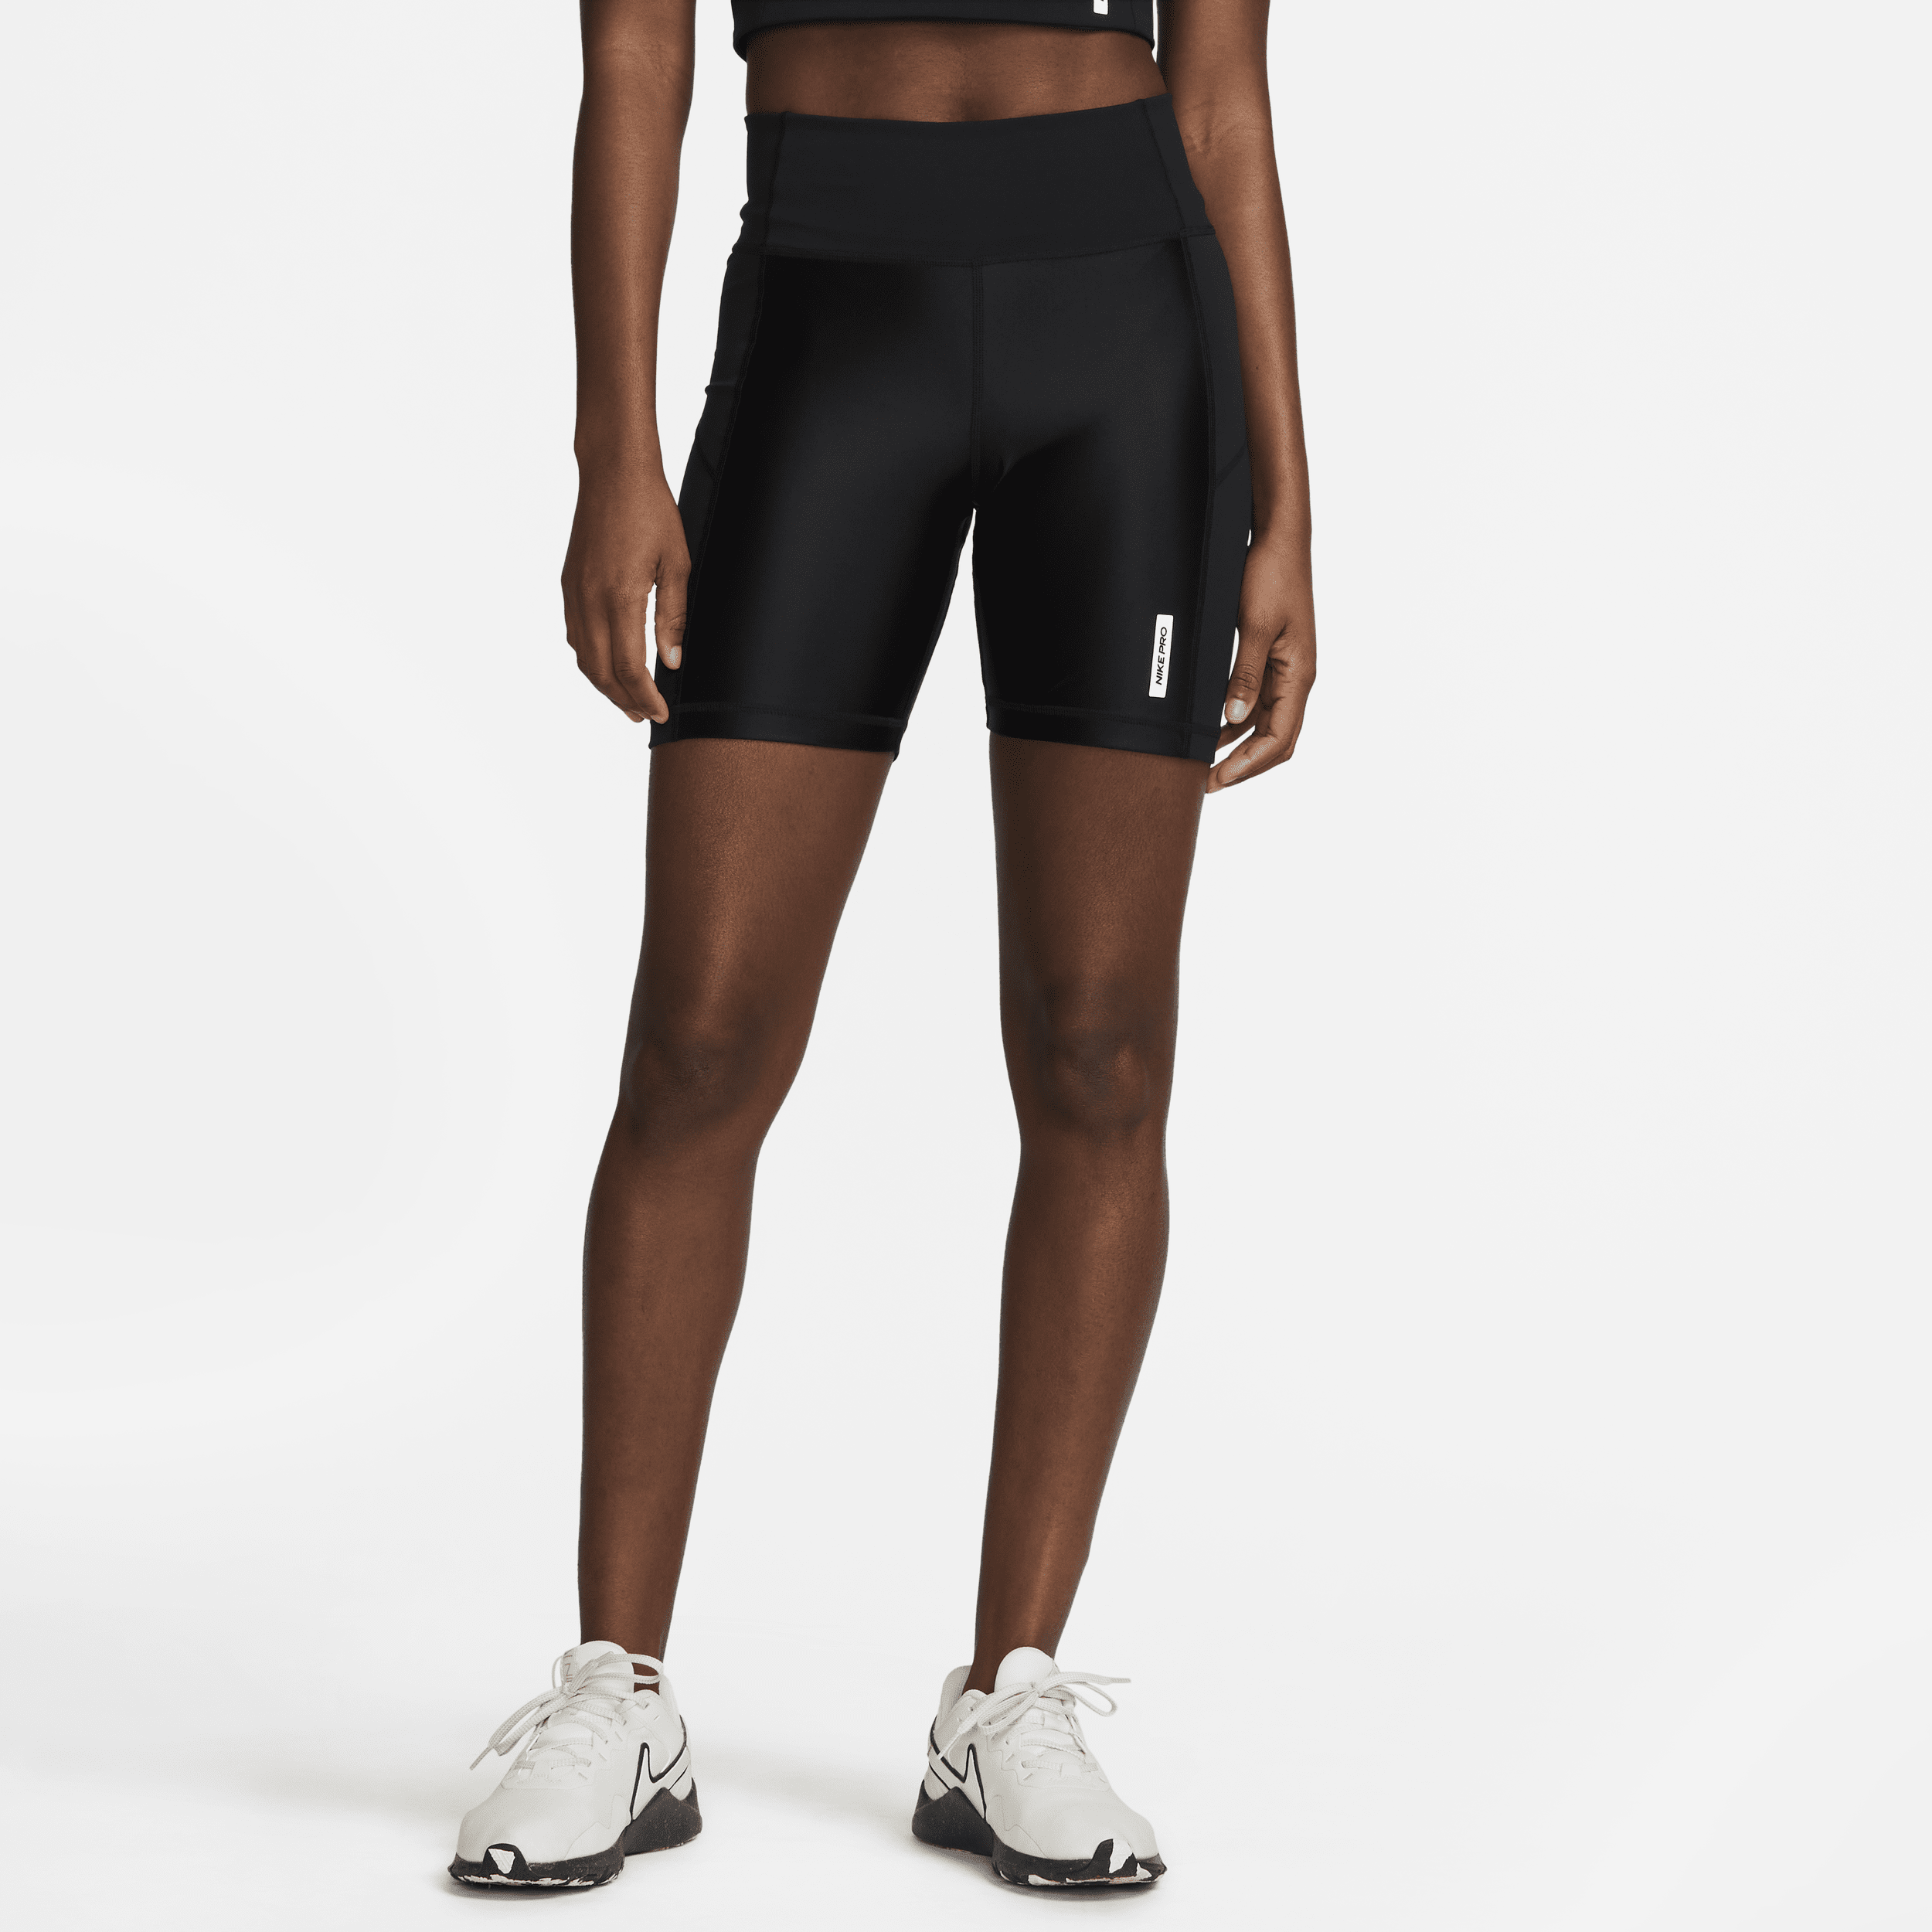 Shorts modello ciclista a vita media 18 cm Nike Pro – Donna - Nero